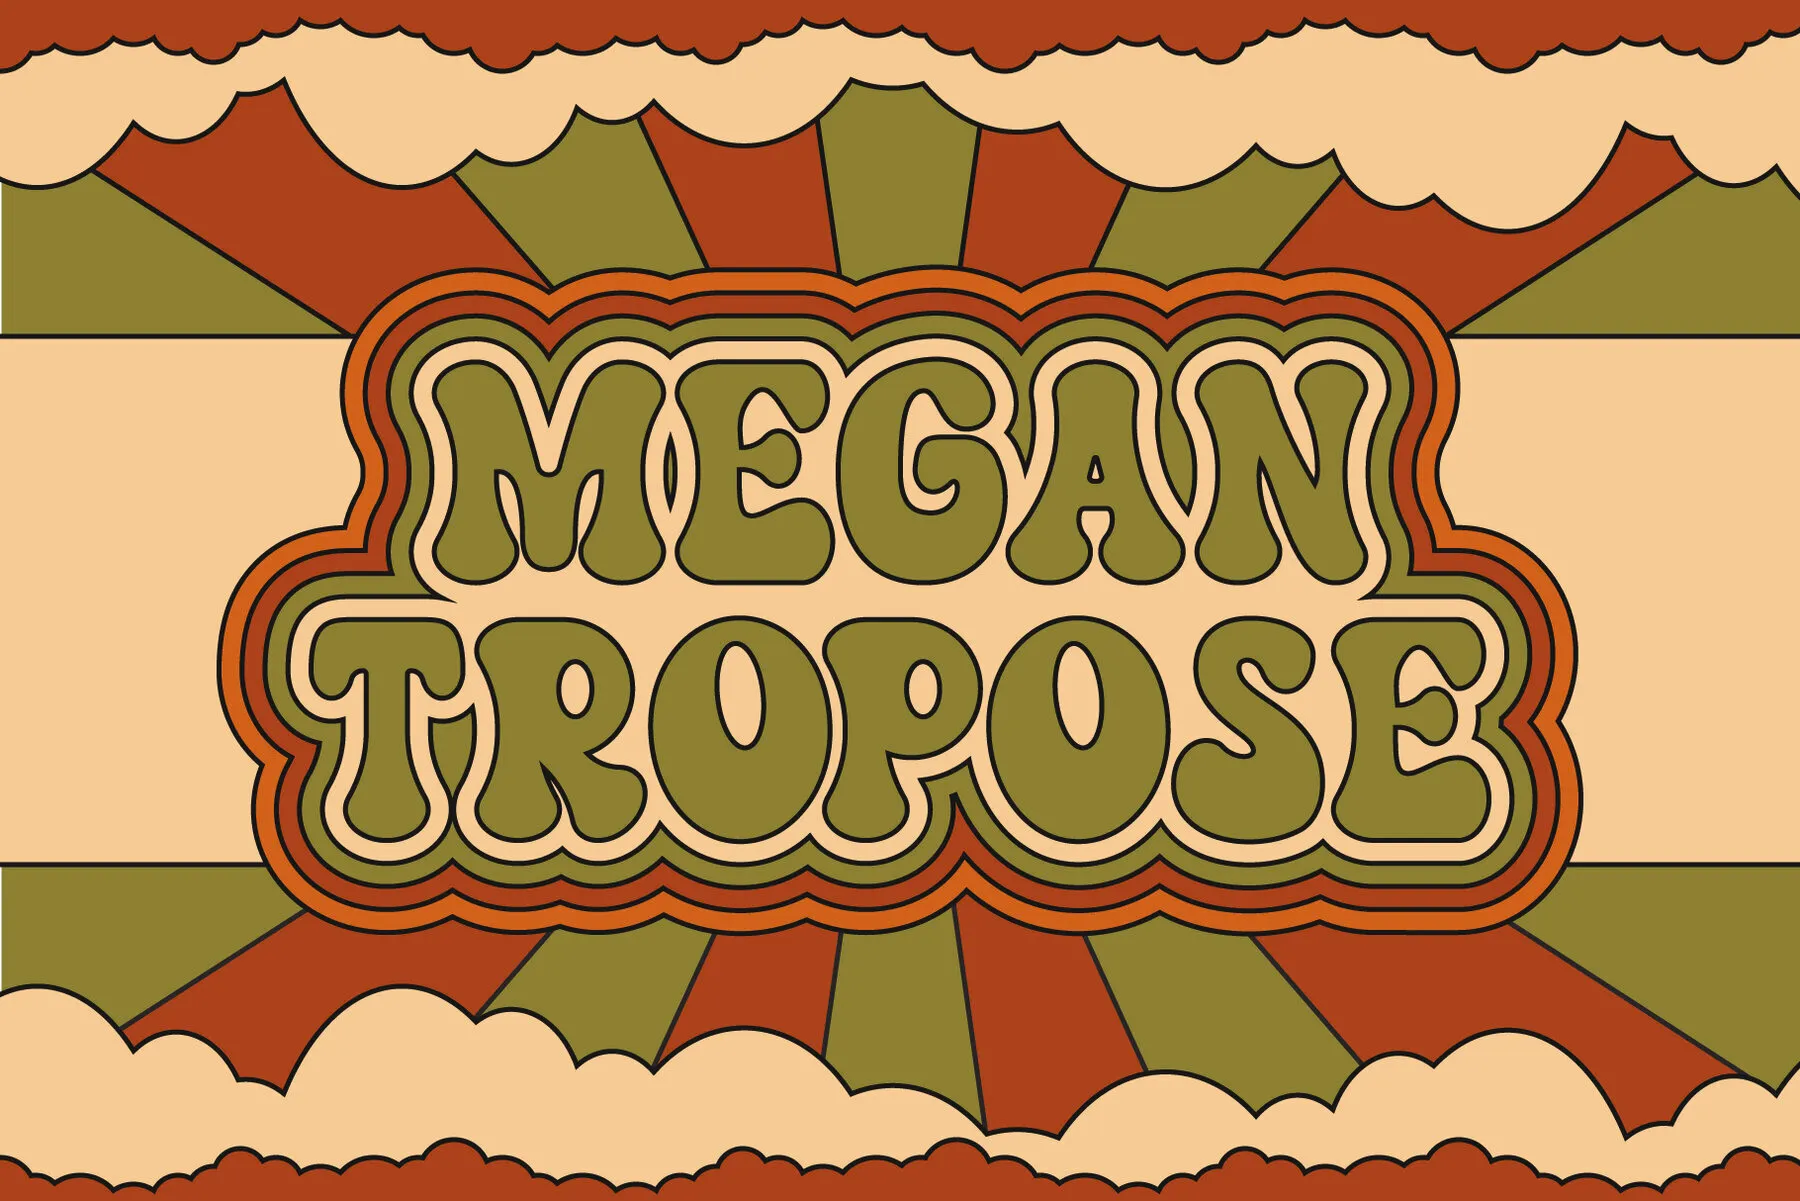 Megantropose